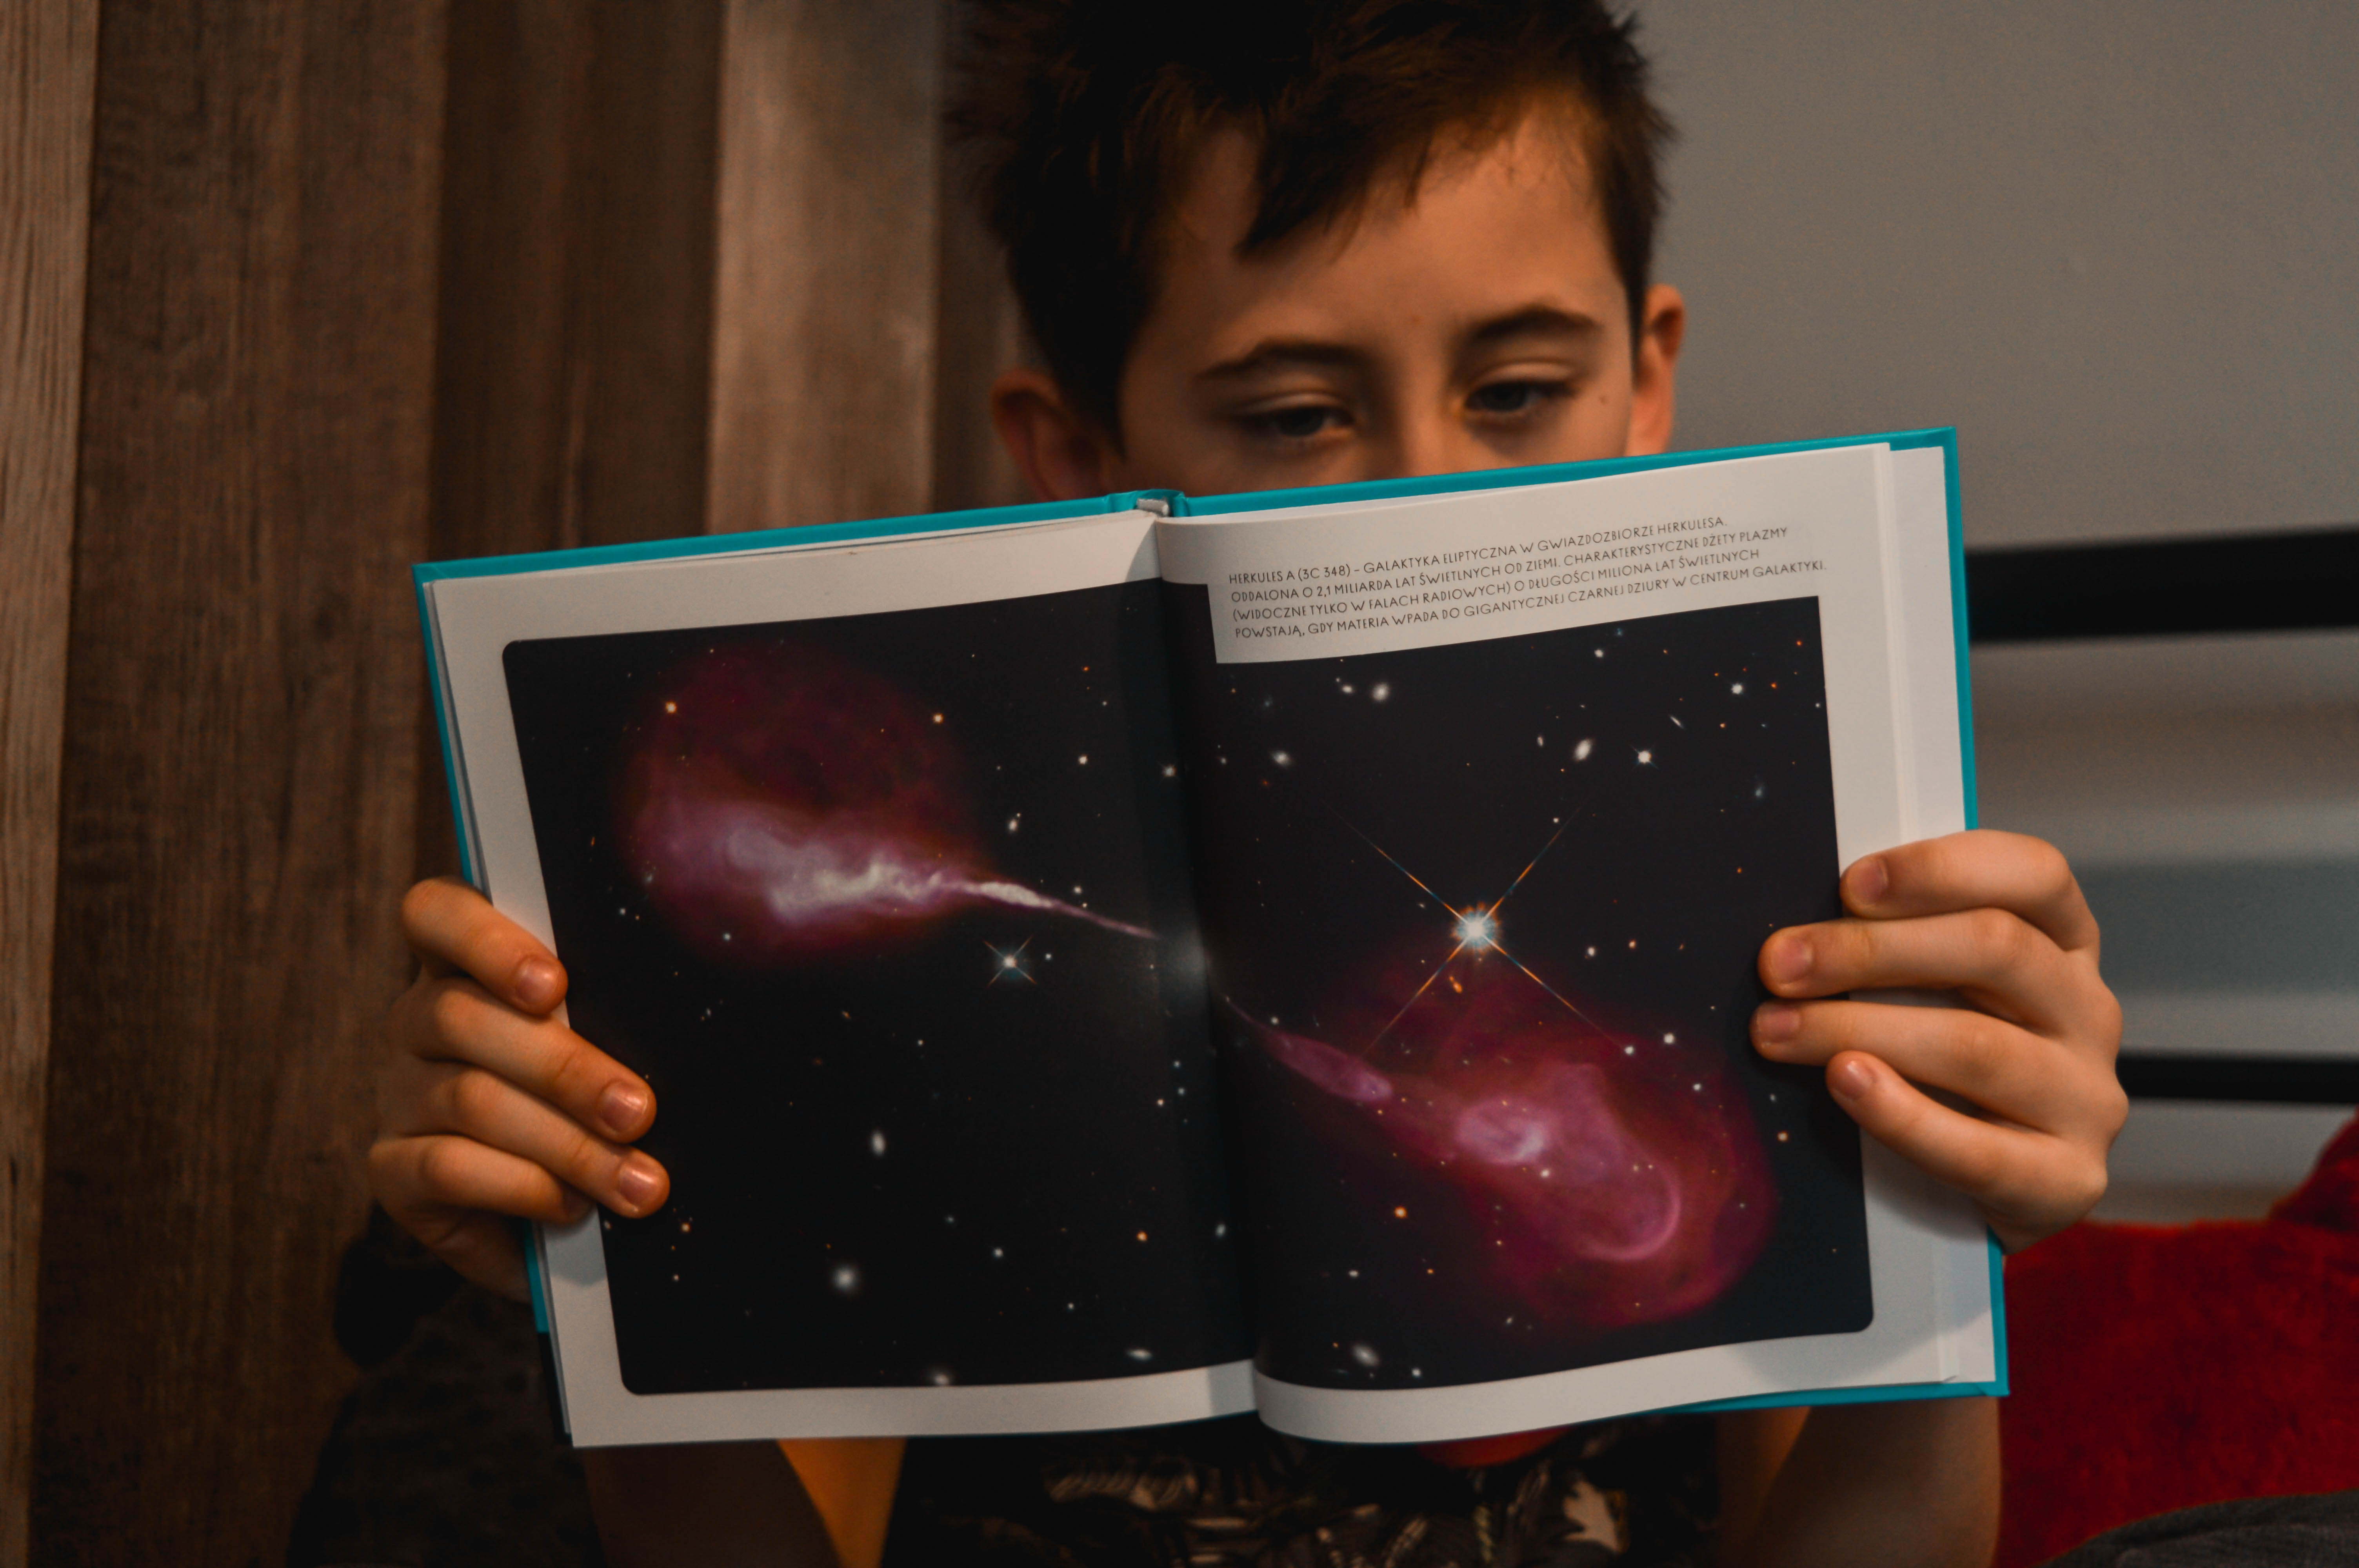 ksiązka o ziemi, kosmosie i przyrodzie dla dzieci - książki przyrodnicze dla dzieci